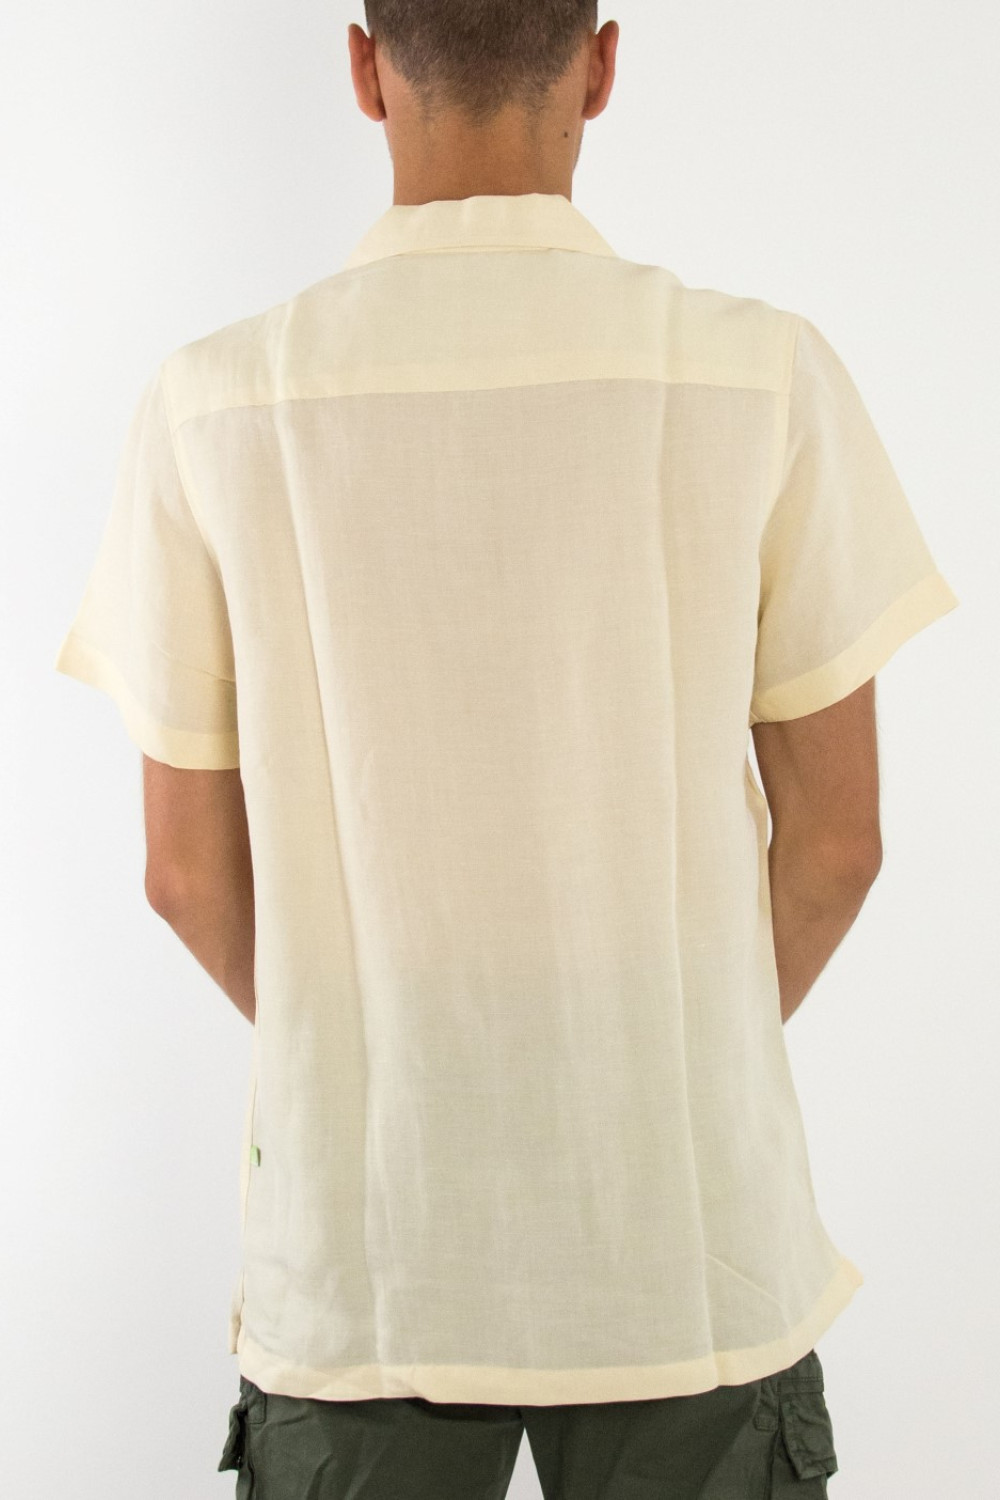 Ανδρικό εκρού λινό πουκάμισο με τύπωμα STK1037